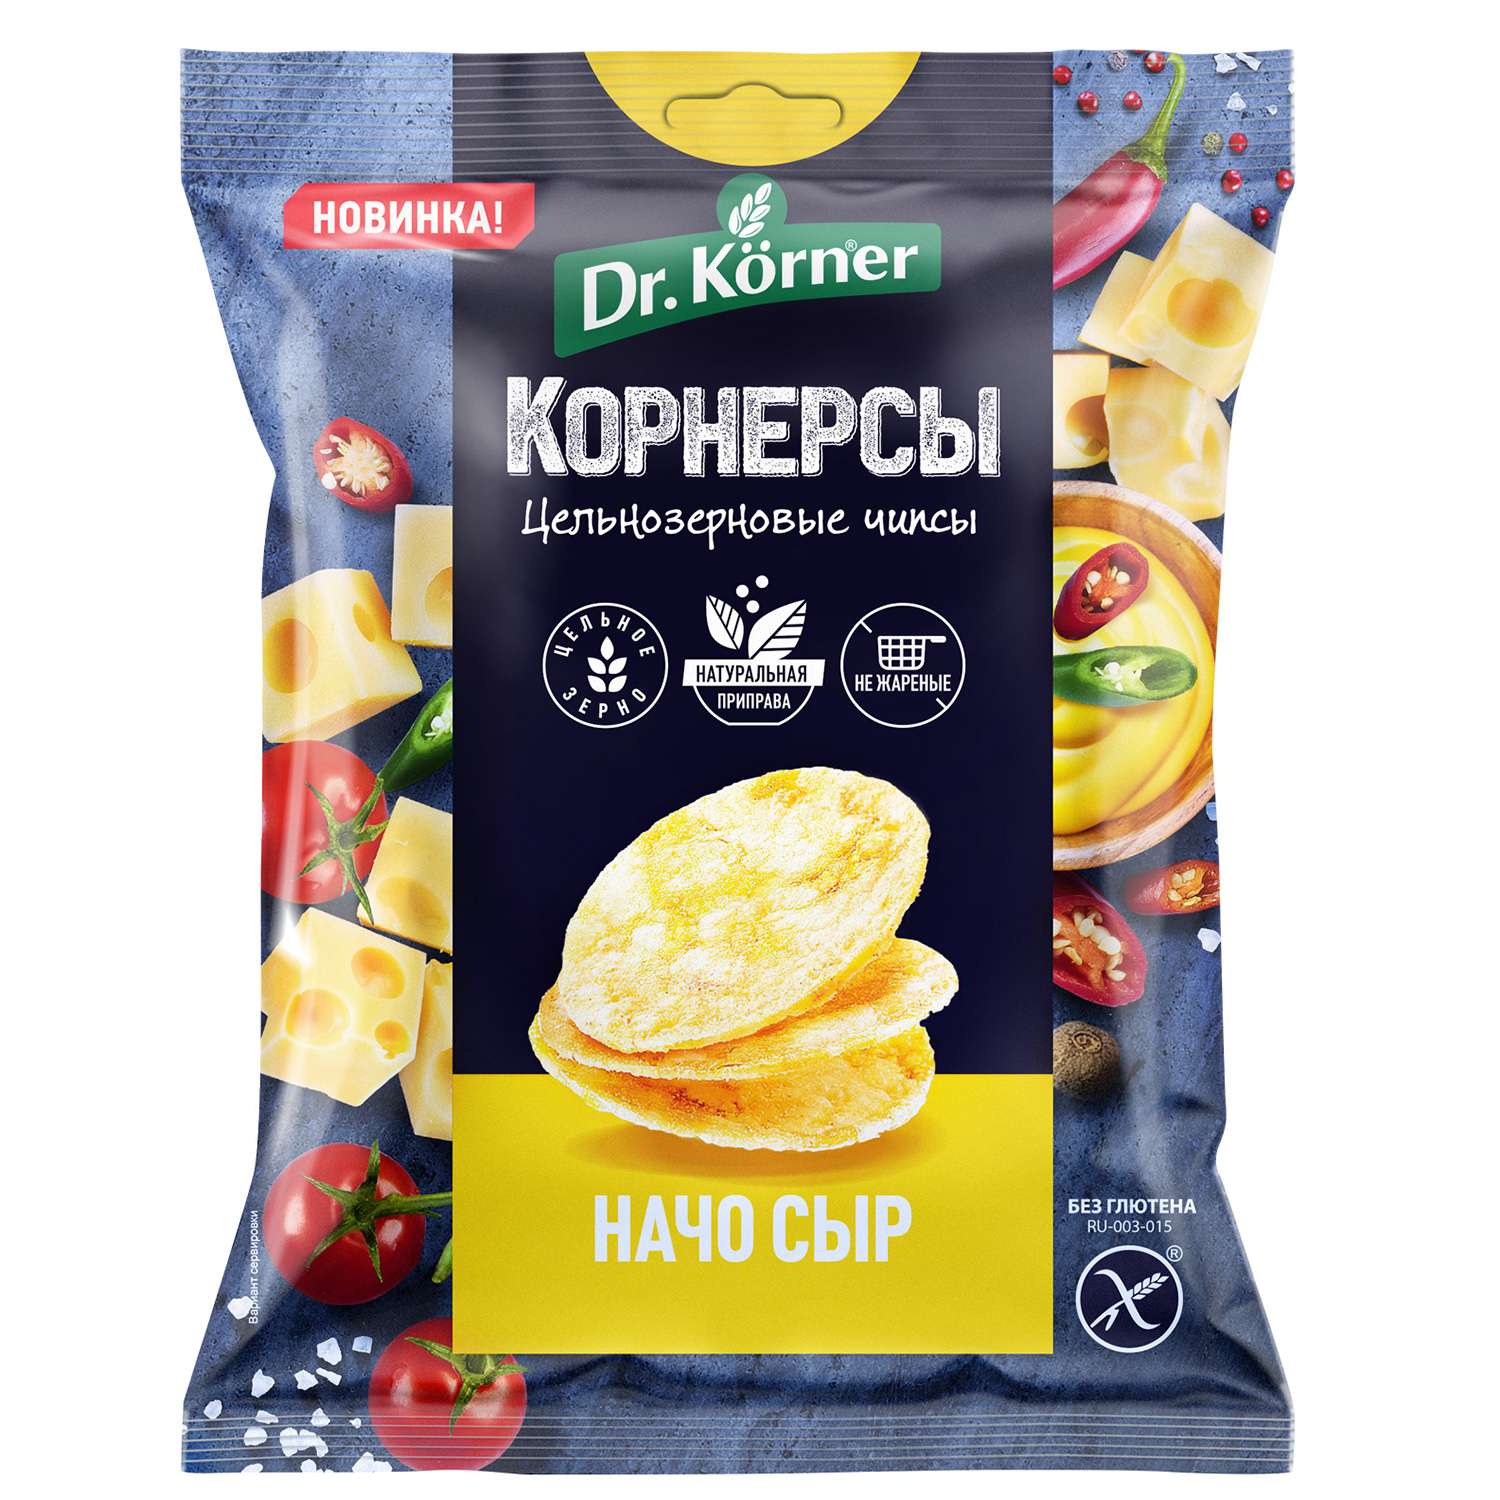 Чипсы Dr. Korner цельнозерновые кукурузно-рисовые с сыром начо 50г - фото 1